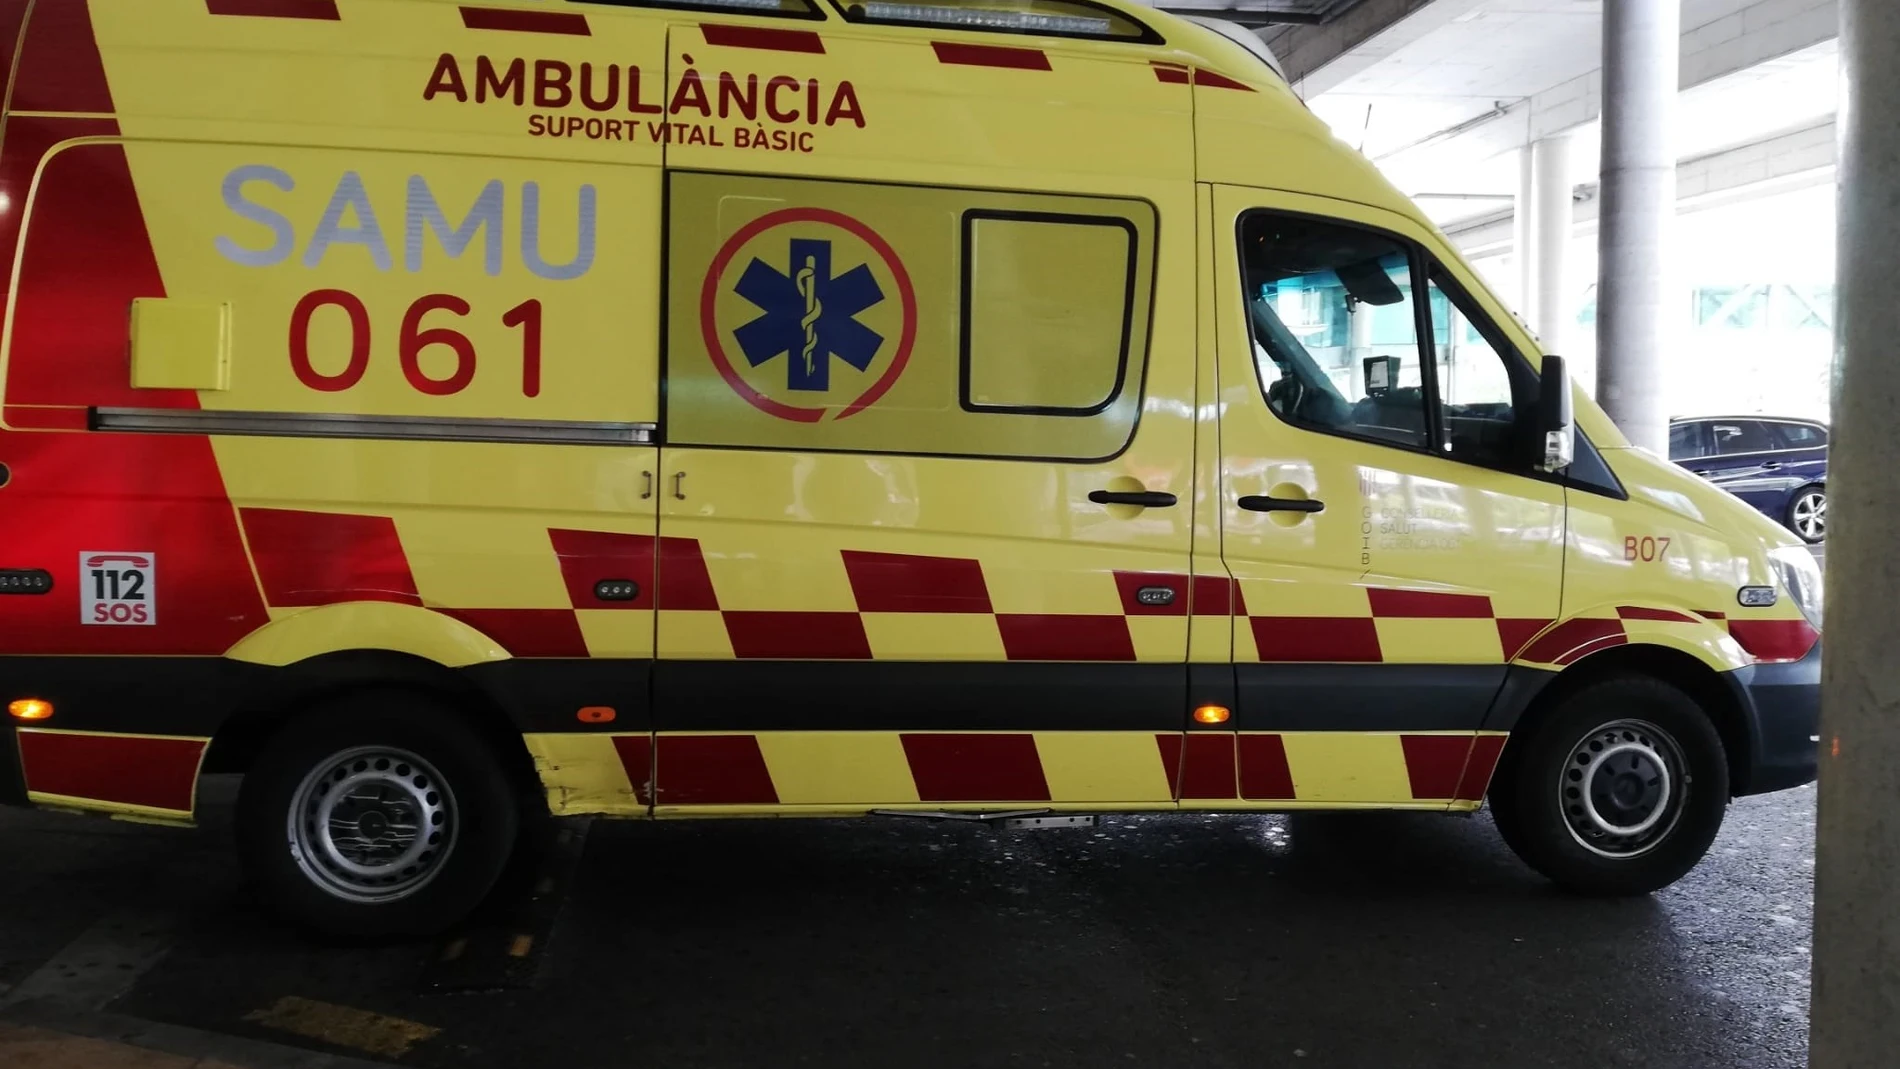 Una ambulancia de soporte vital básico del SAMU 061 de Baleares, aparcada en el Hospital Son Espases